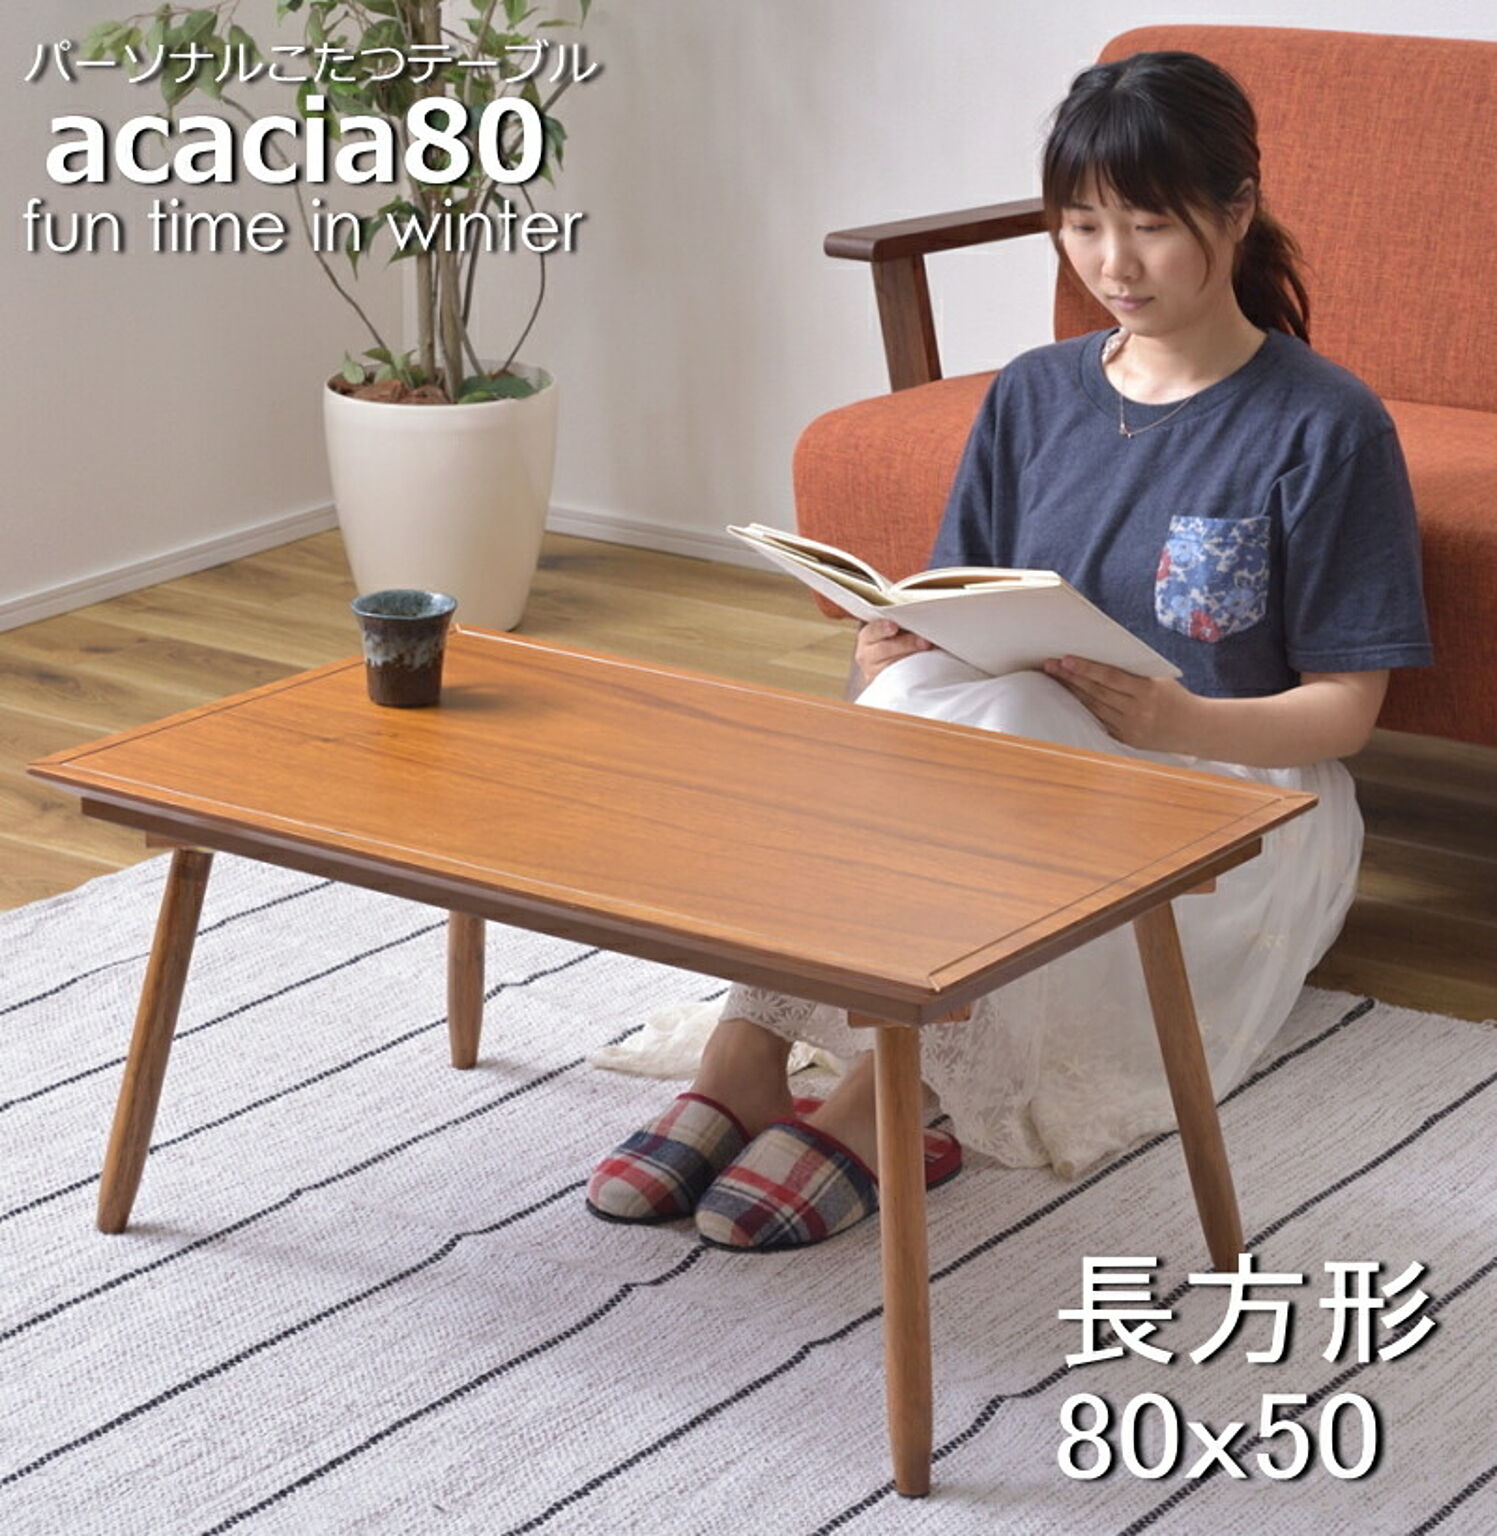 アカシア80 1人用 パーソナルこたつテーブル 80x50cm ミニ コンパクト 天然木 KT-212